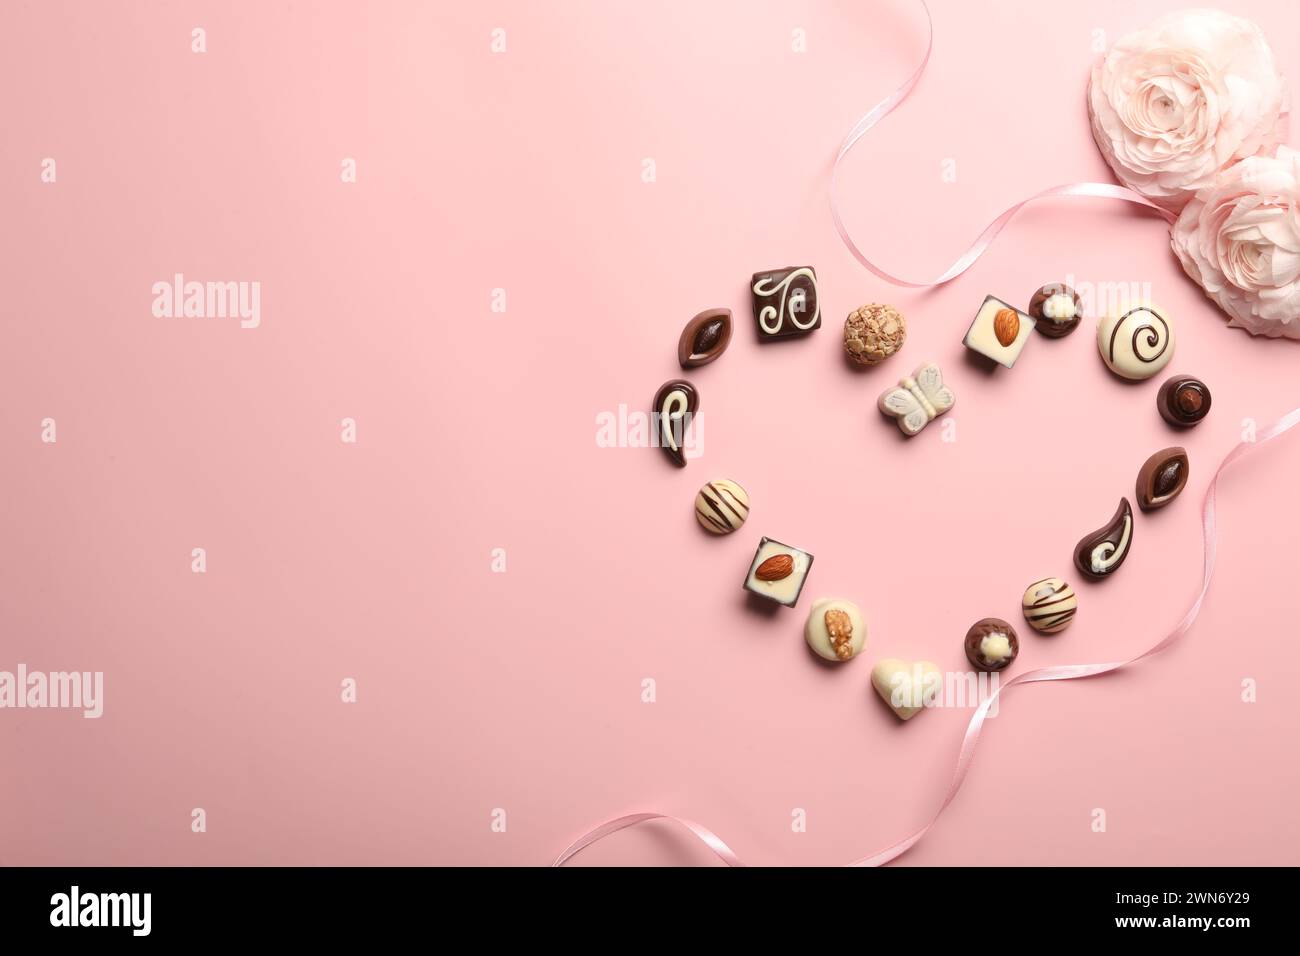 Cuore fatto con deliziose caramelle al cioccolato su sfondo rosa chiaro, piatto. Spazio per il testo Foto Stock